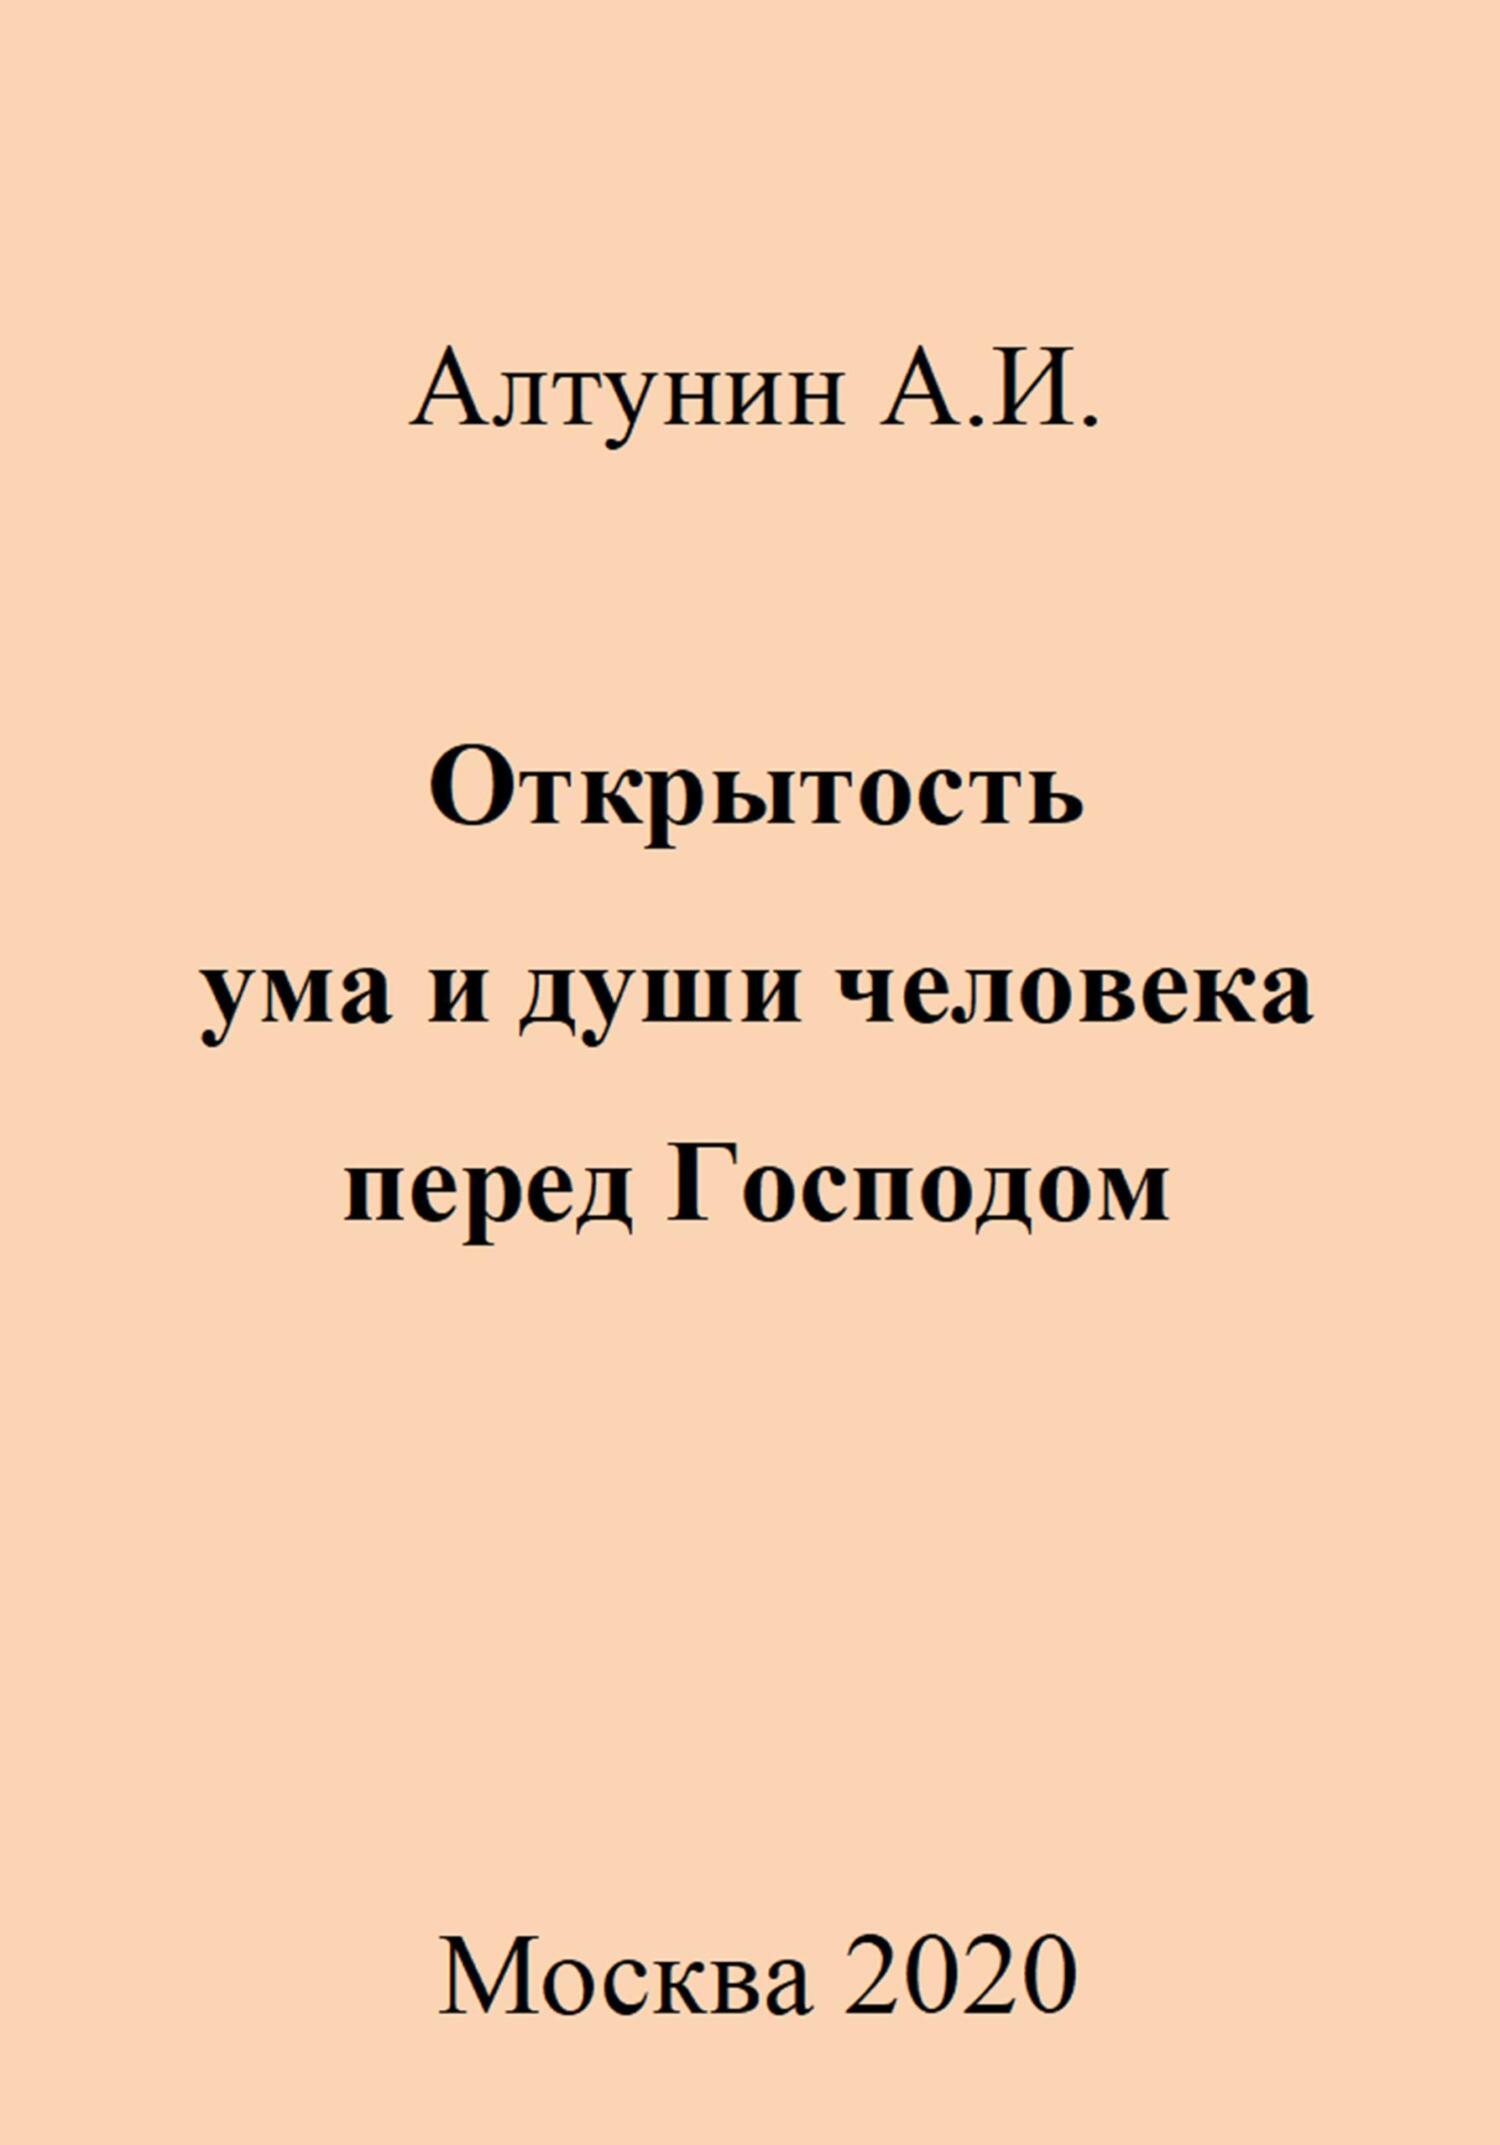 Открытость ума и души человека перед Господом - Александр Иванович Алтунин